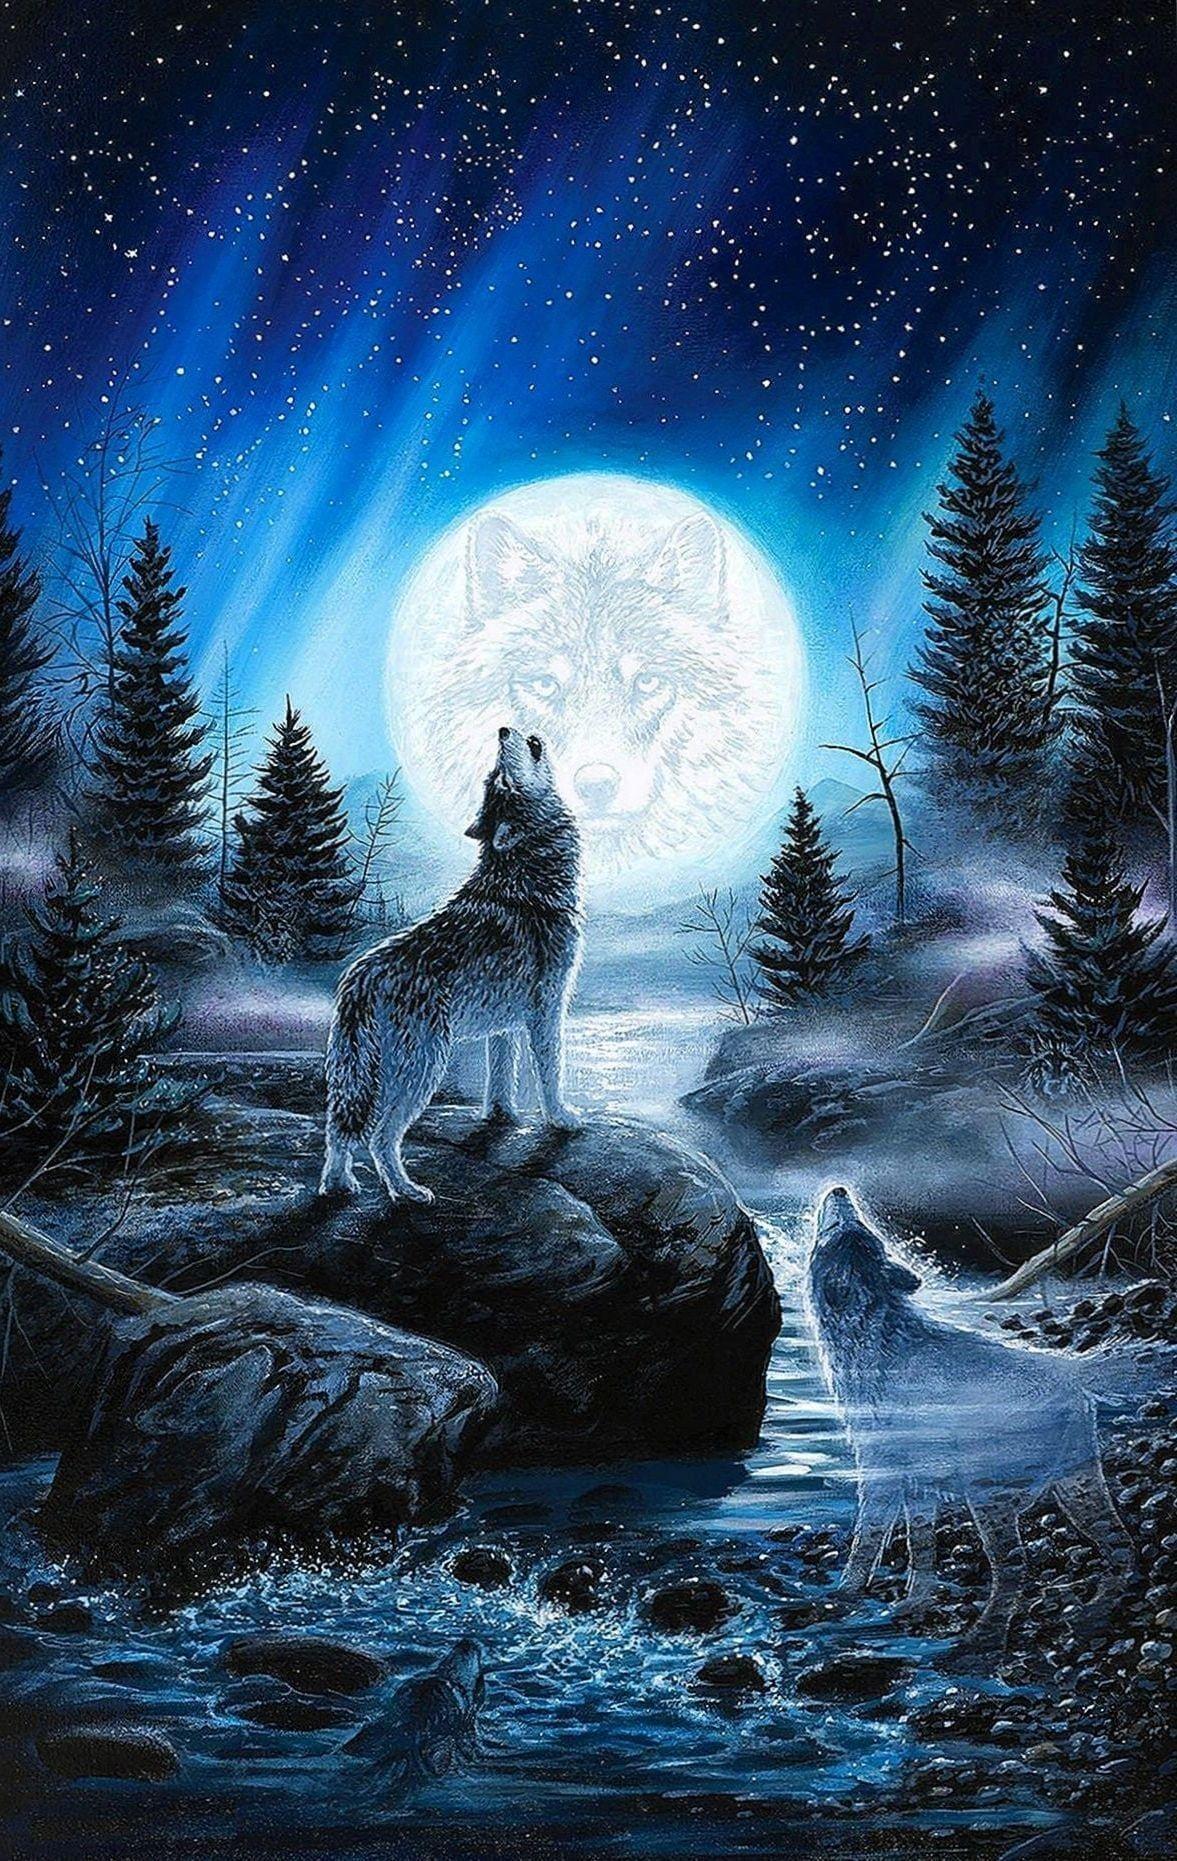 Sói Hú Lên Mặt Trăng Hình minh họa Sẵn có  Tải xuống Hình ảnh Ngay bây giờ   Chó sói Rú lên Mặt trăng  Bầu trời  iStock